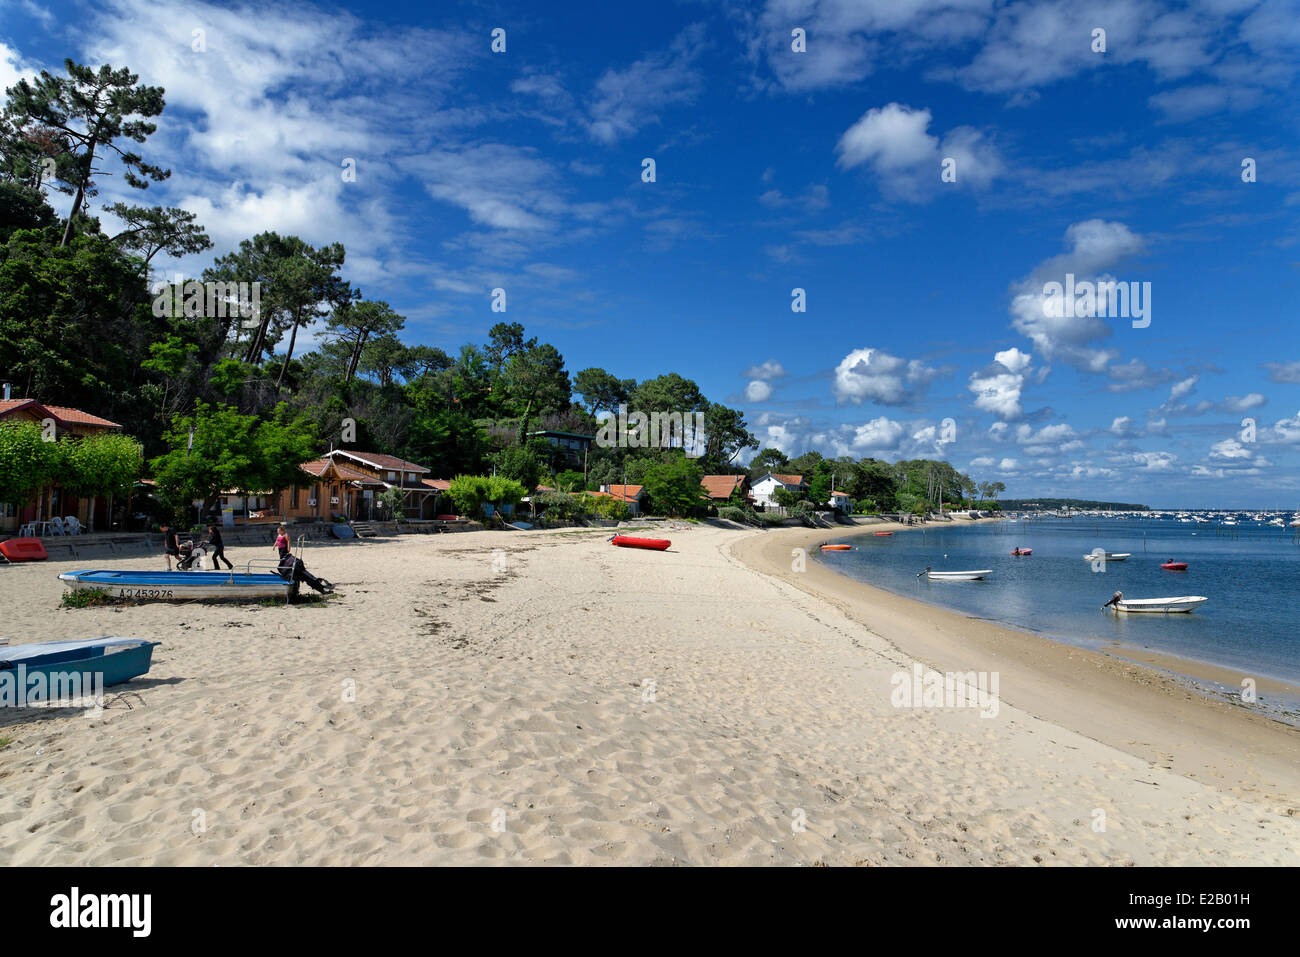 France, Gironde, Arcachon, L'Herbe, crique de sable au pied des maisons et de pins surplombant une plage Banque D'Images